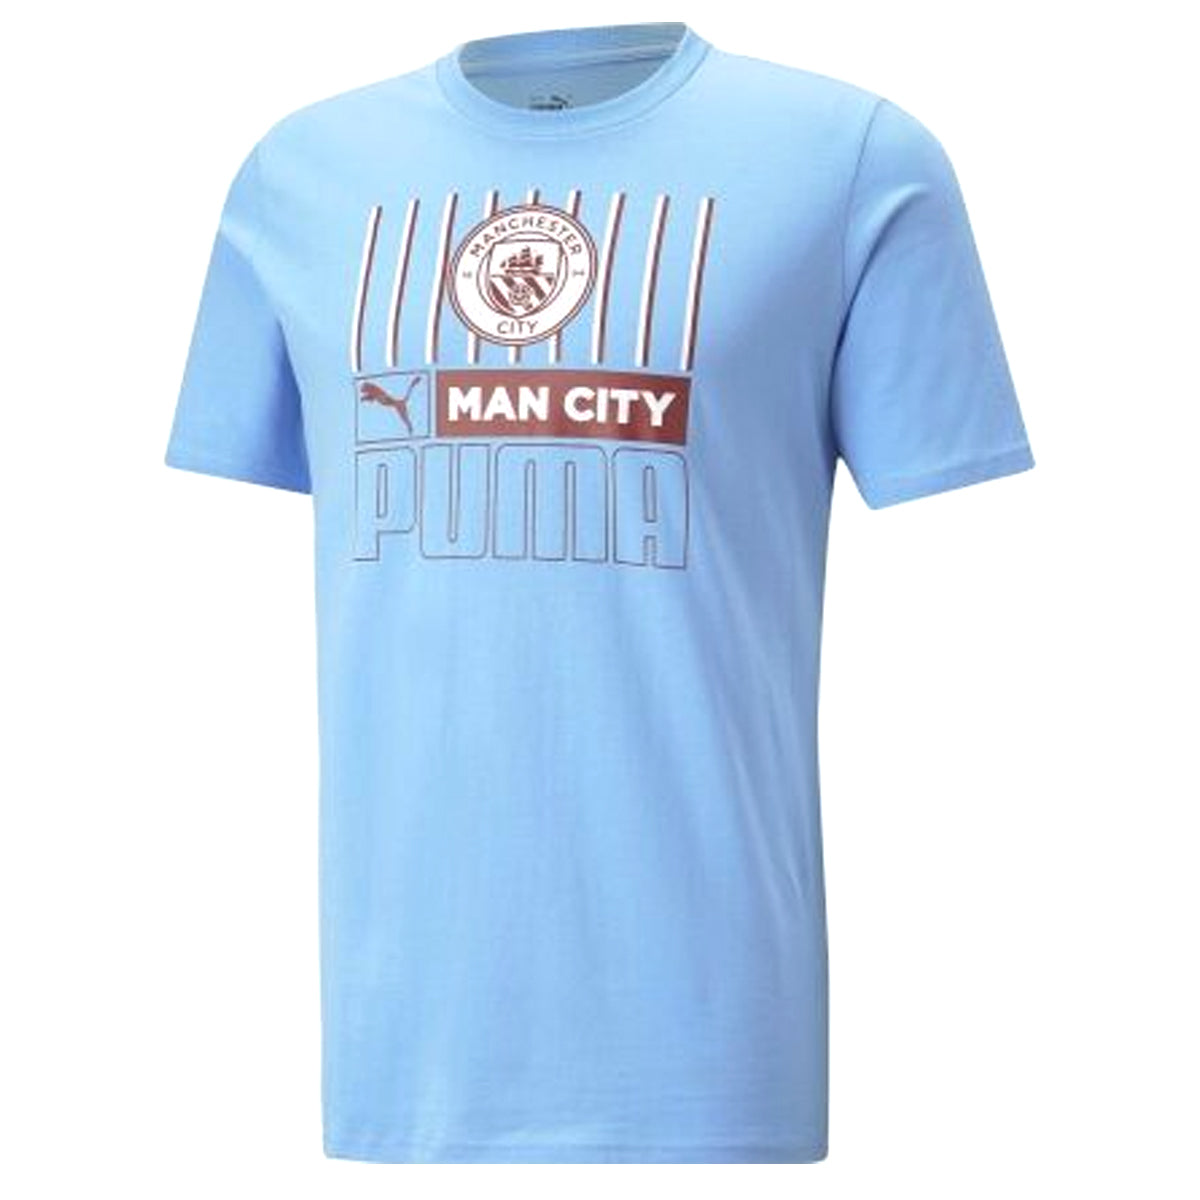 man city t shirt for sale